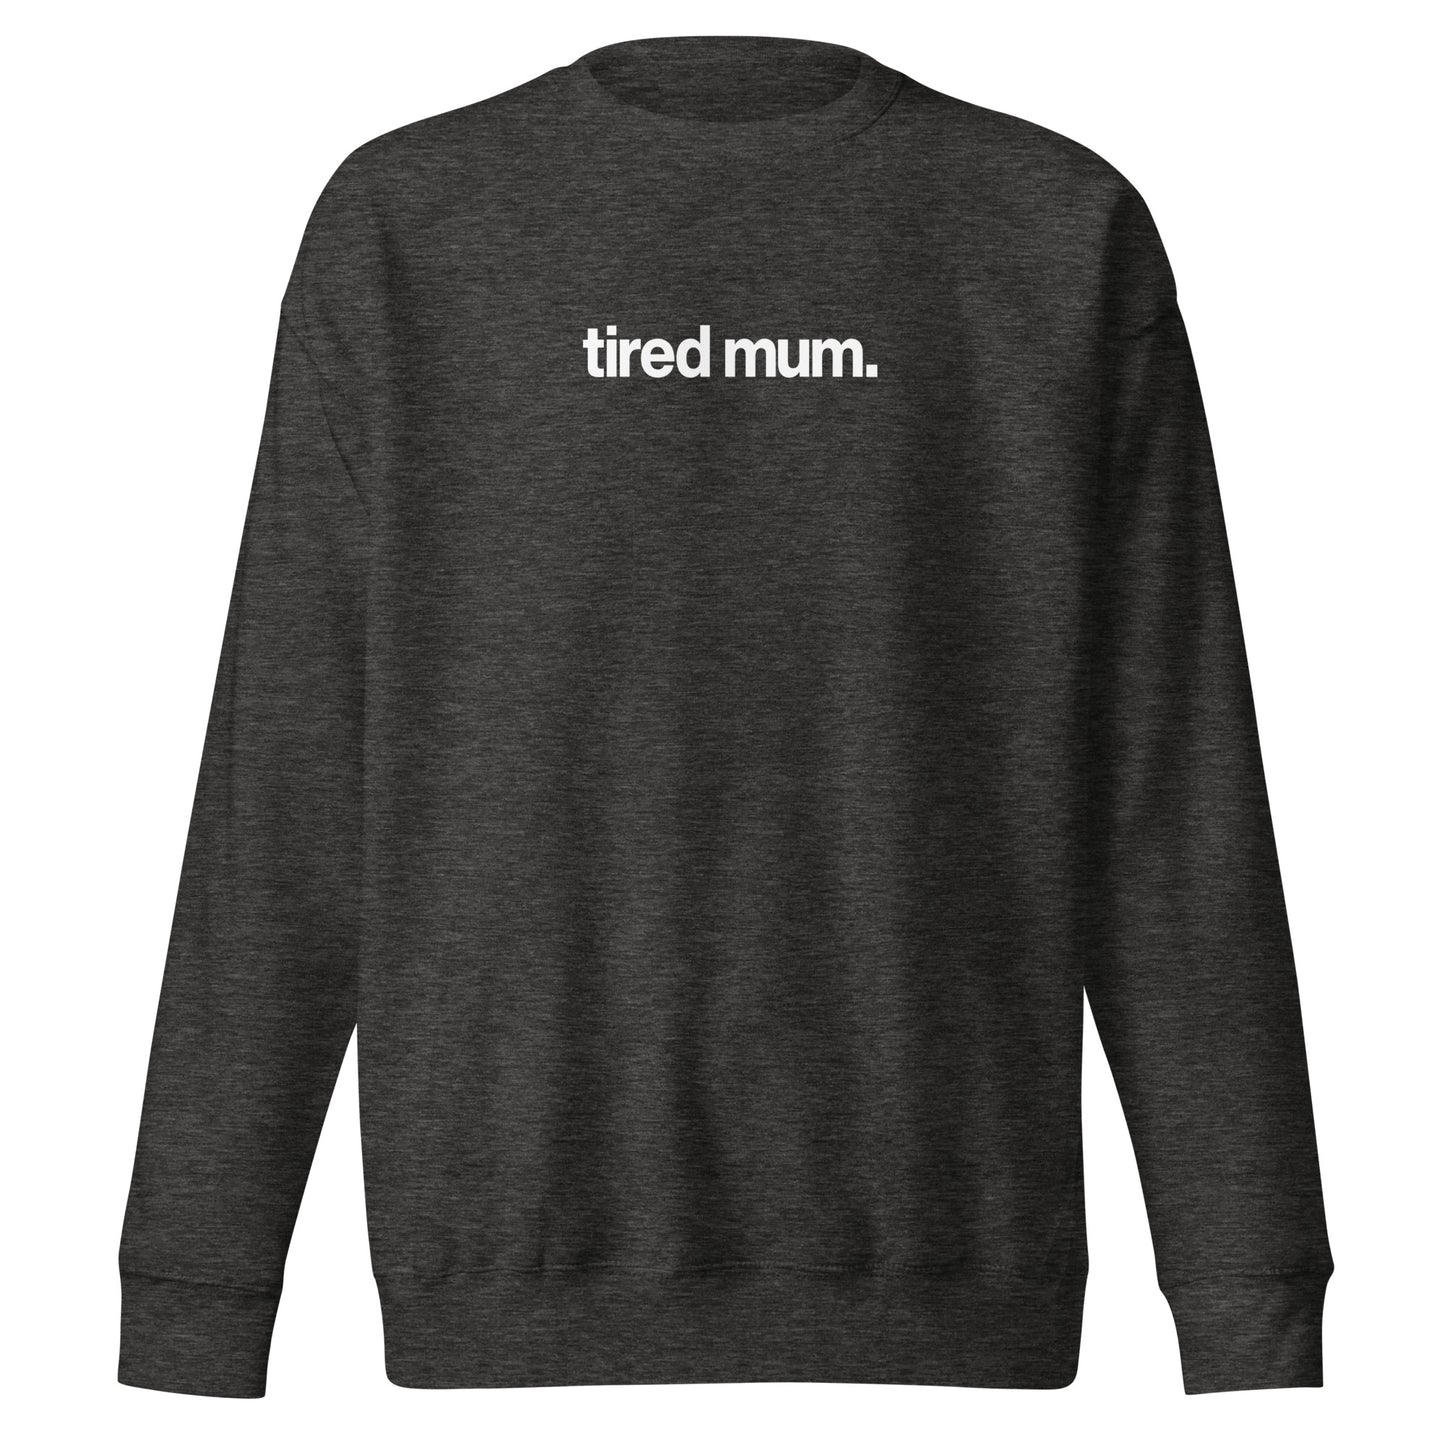 "tired mum." sweatshirt